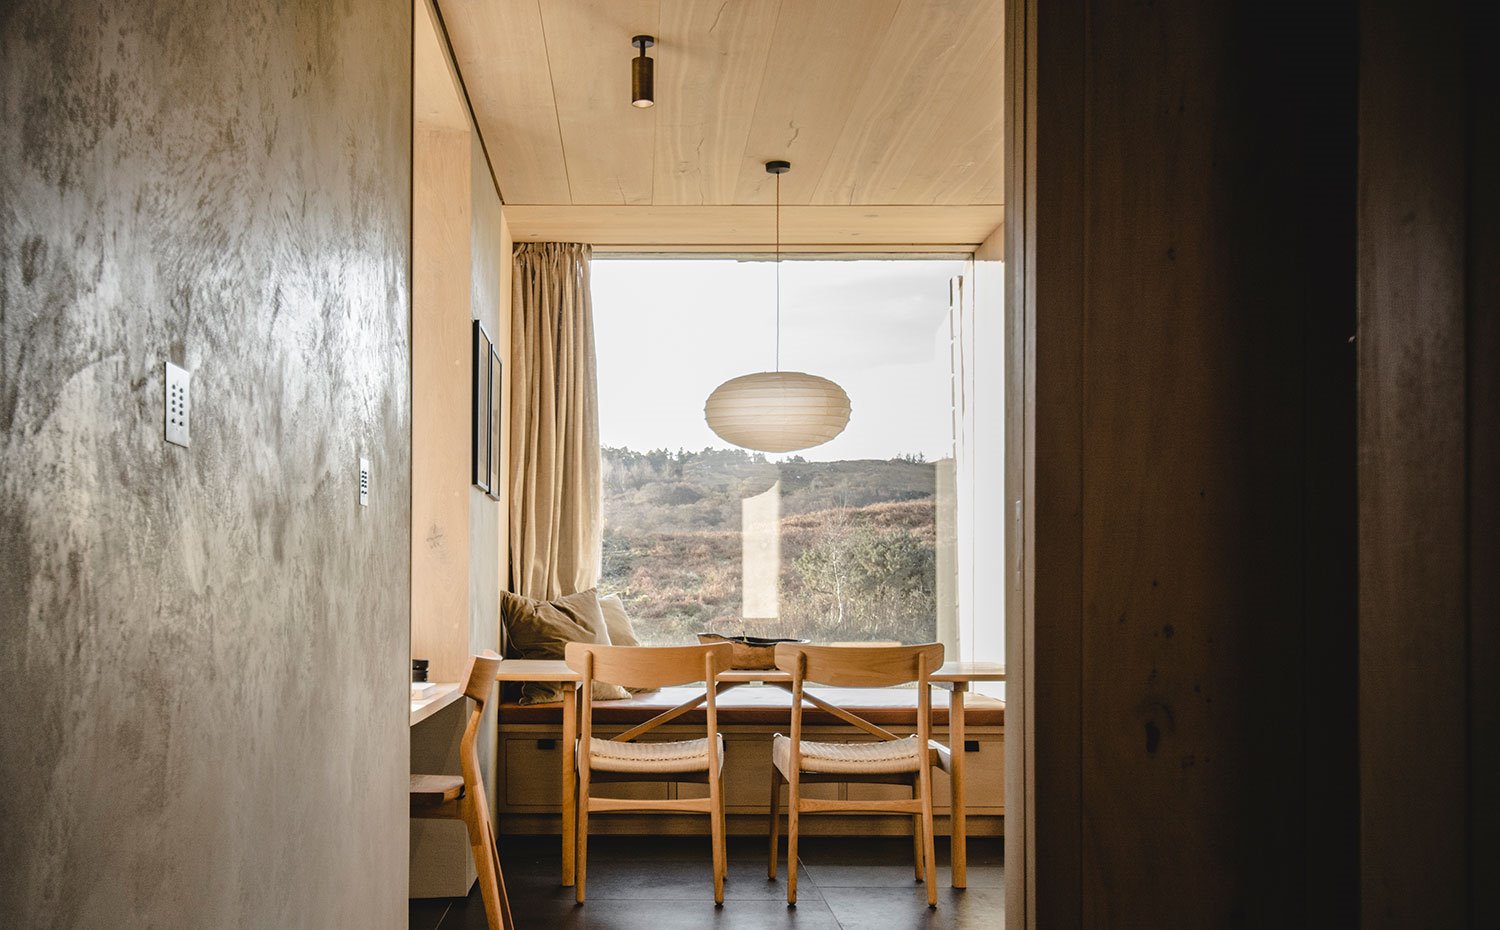 Zona comedor con sillas de madera, luminaria suspendida con pantalla ovalada, foco negro integrado en techo laminado en madera